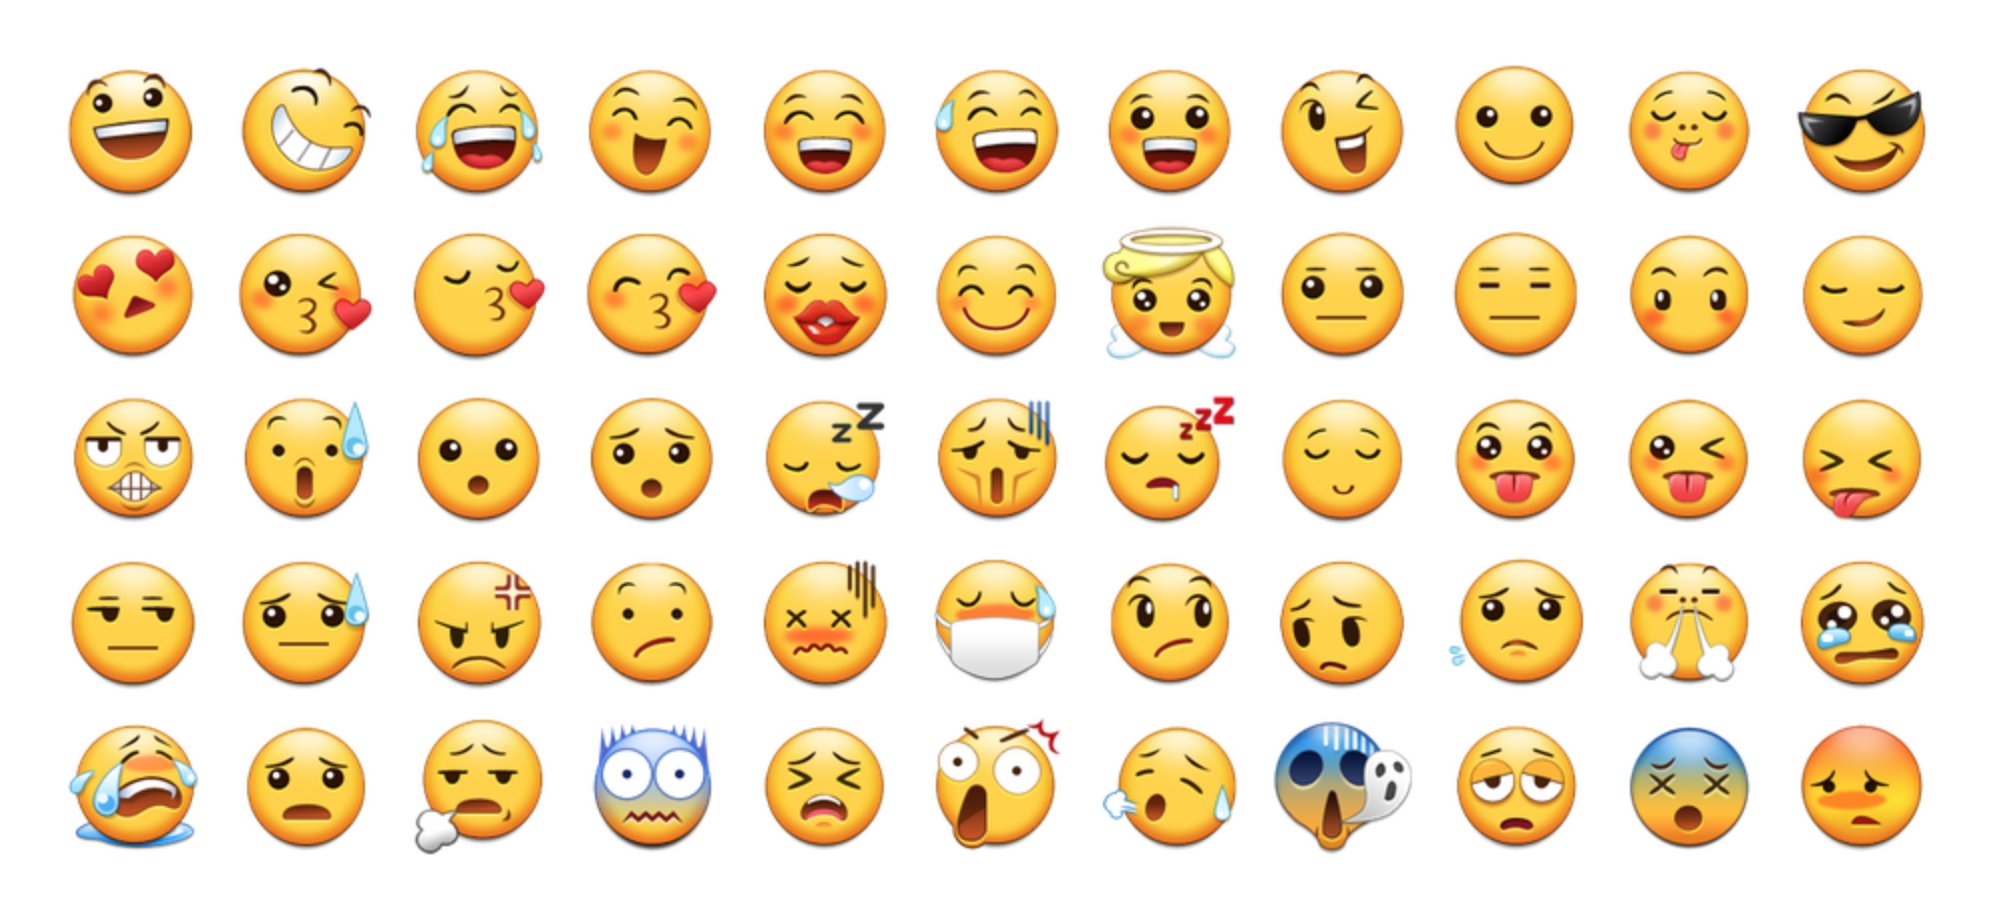 Emoji Description Chart